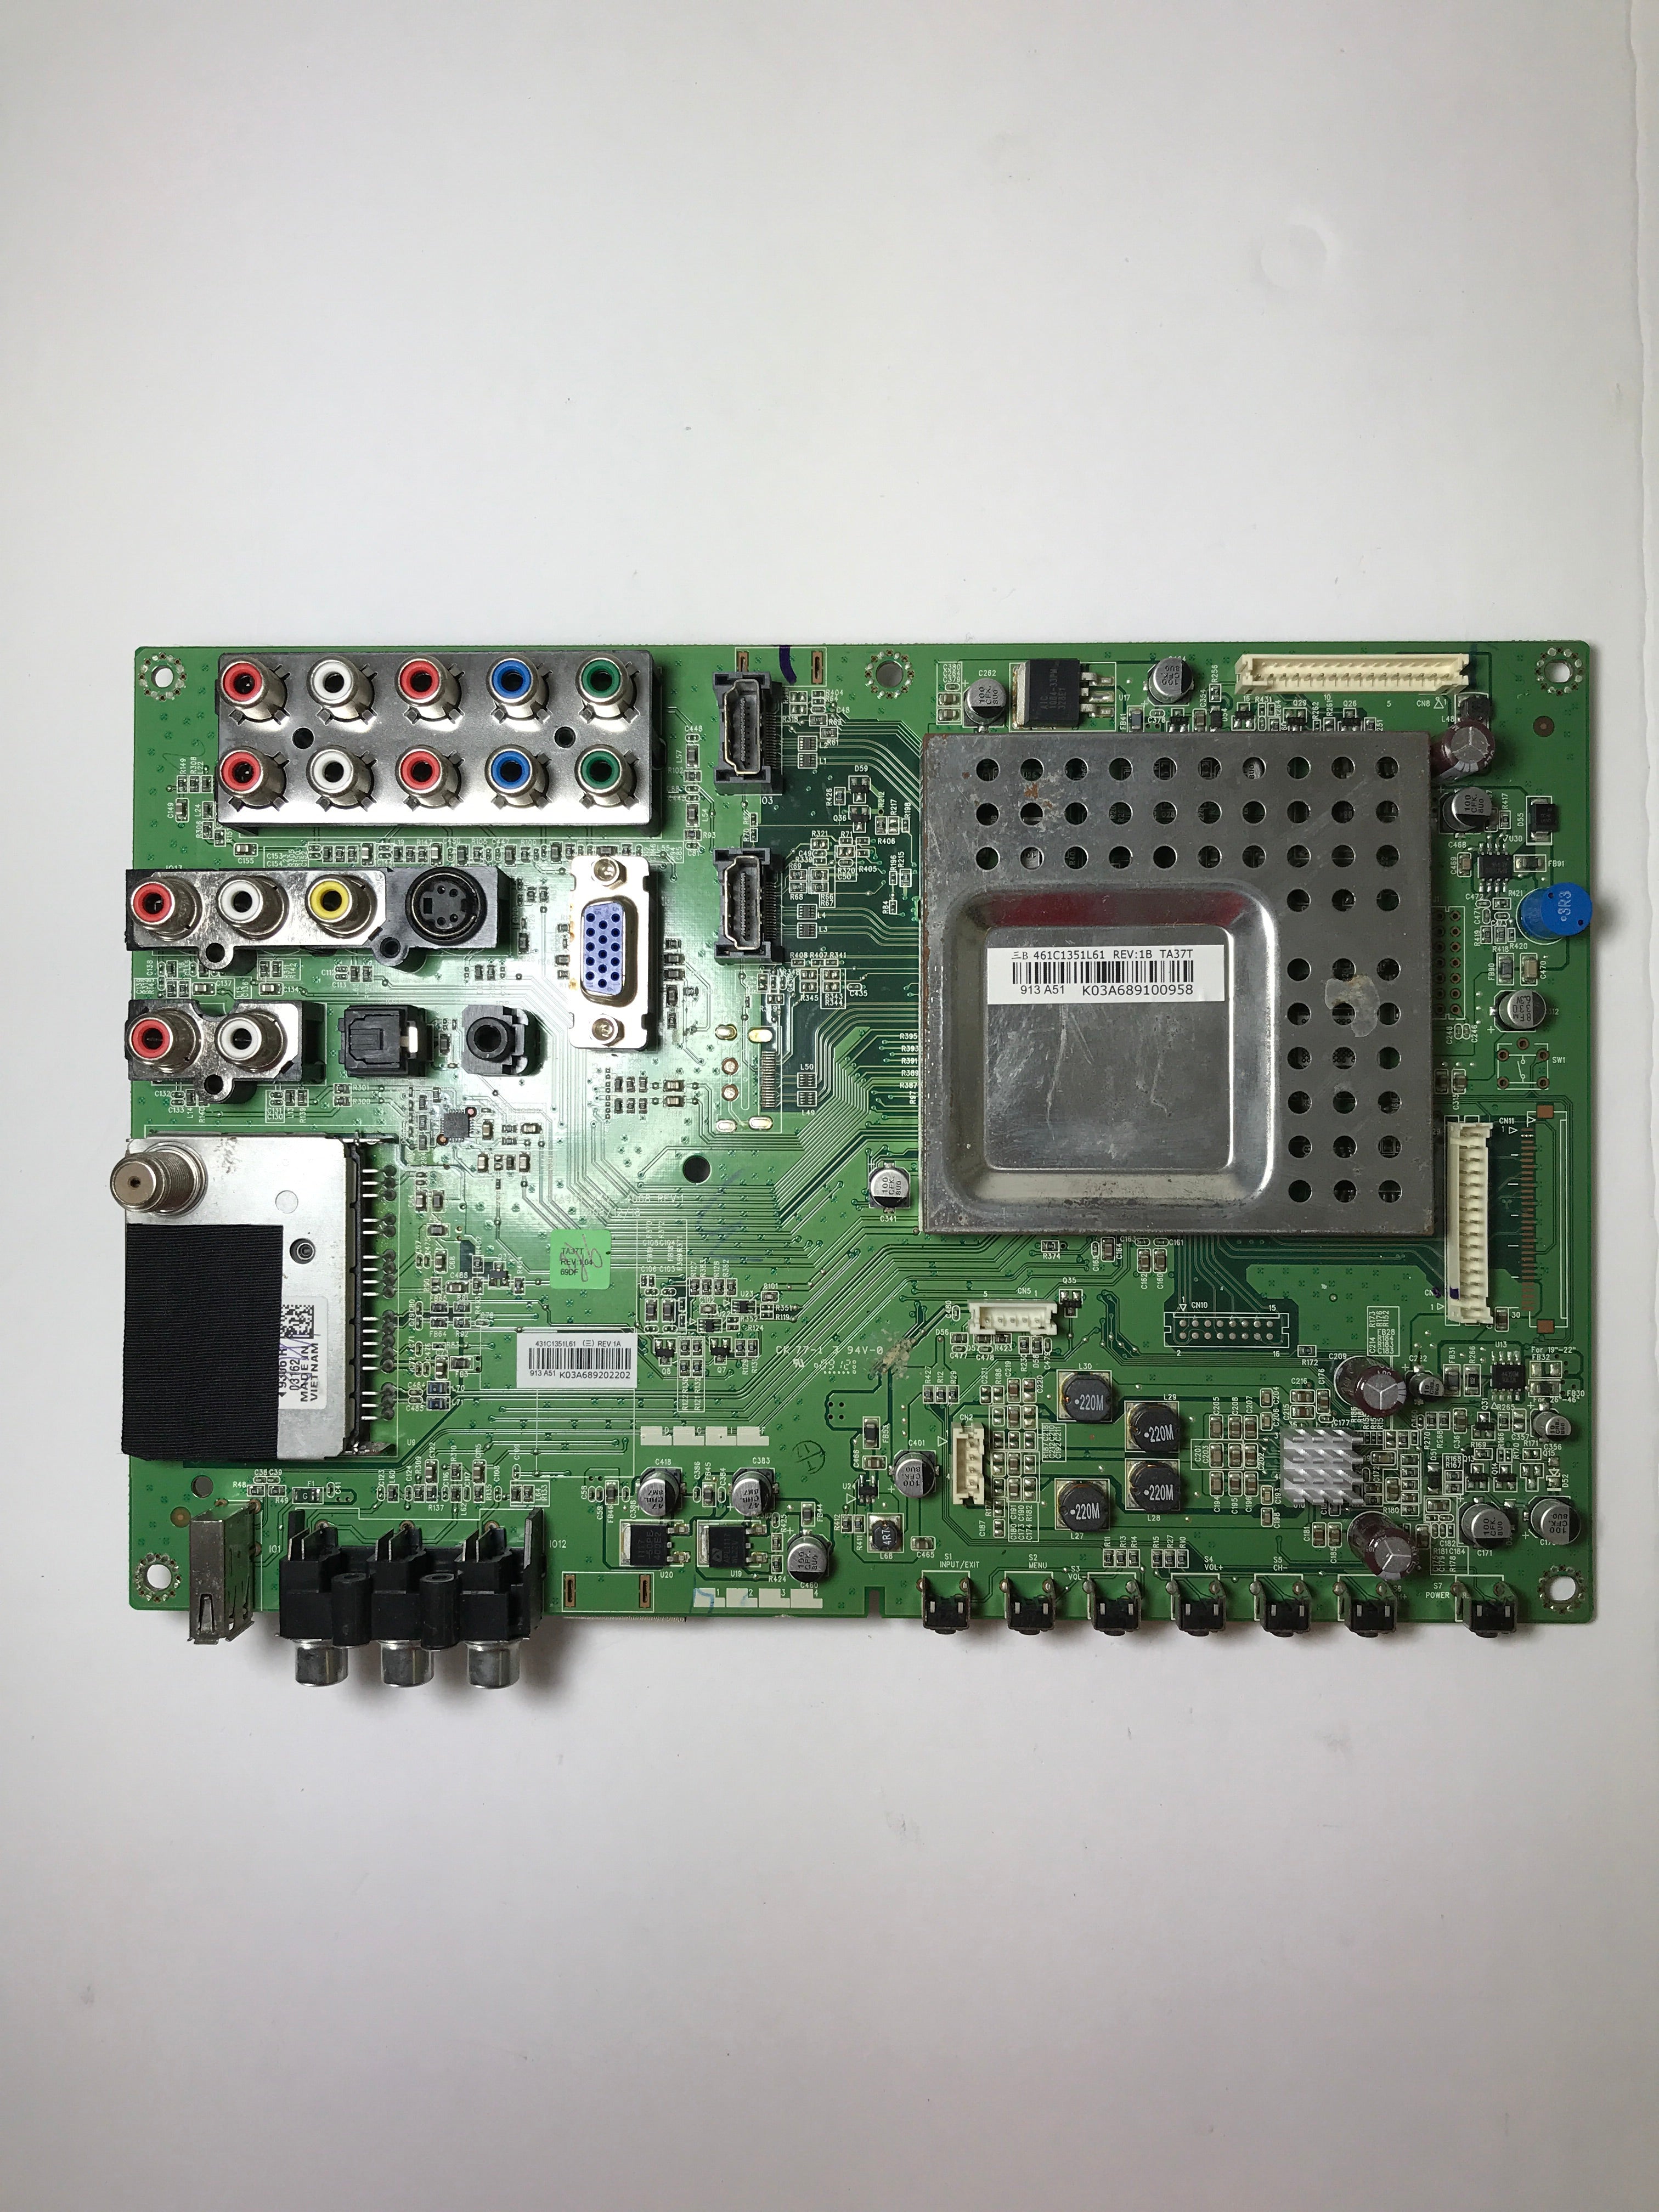 Toshiba 75014430 Main Board for 37AV502R / 37AV52R